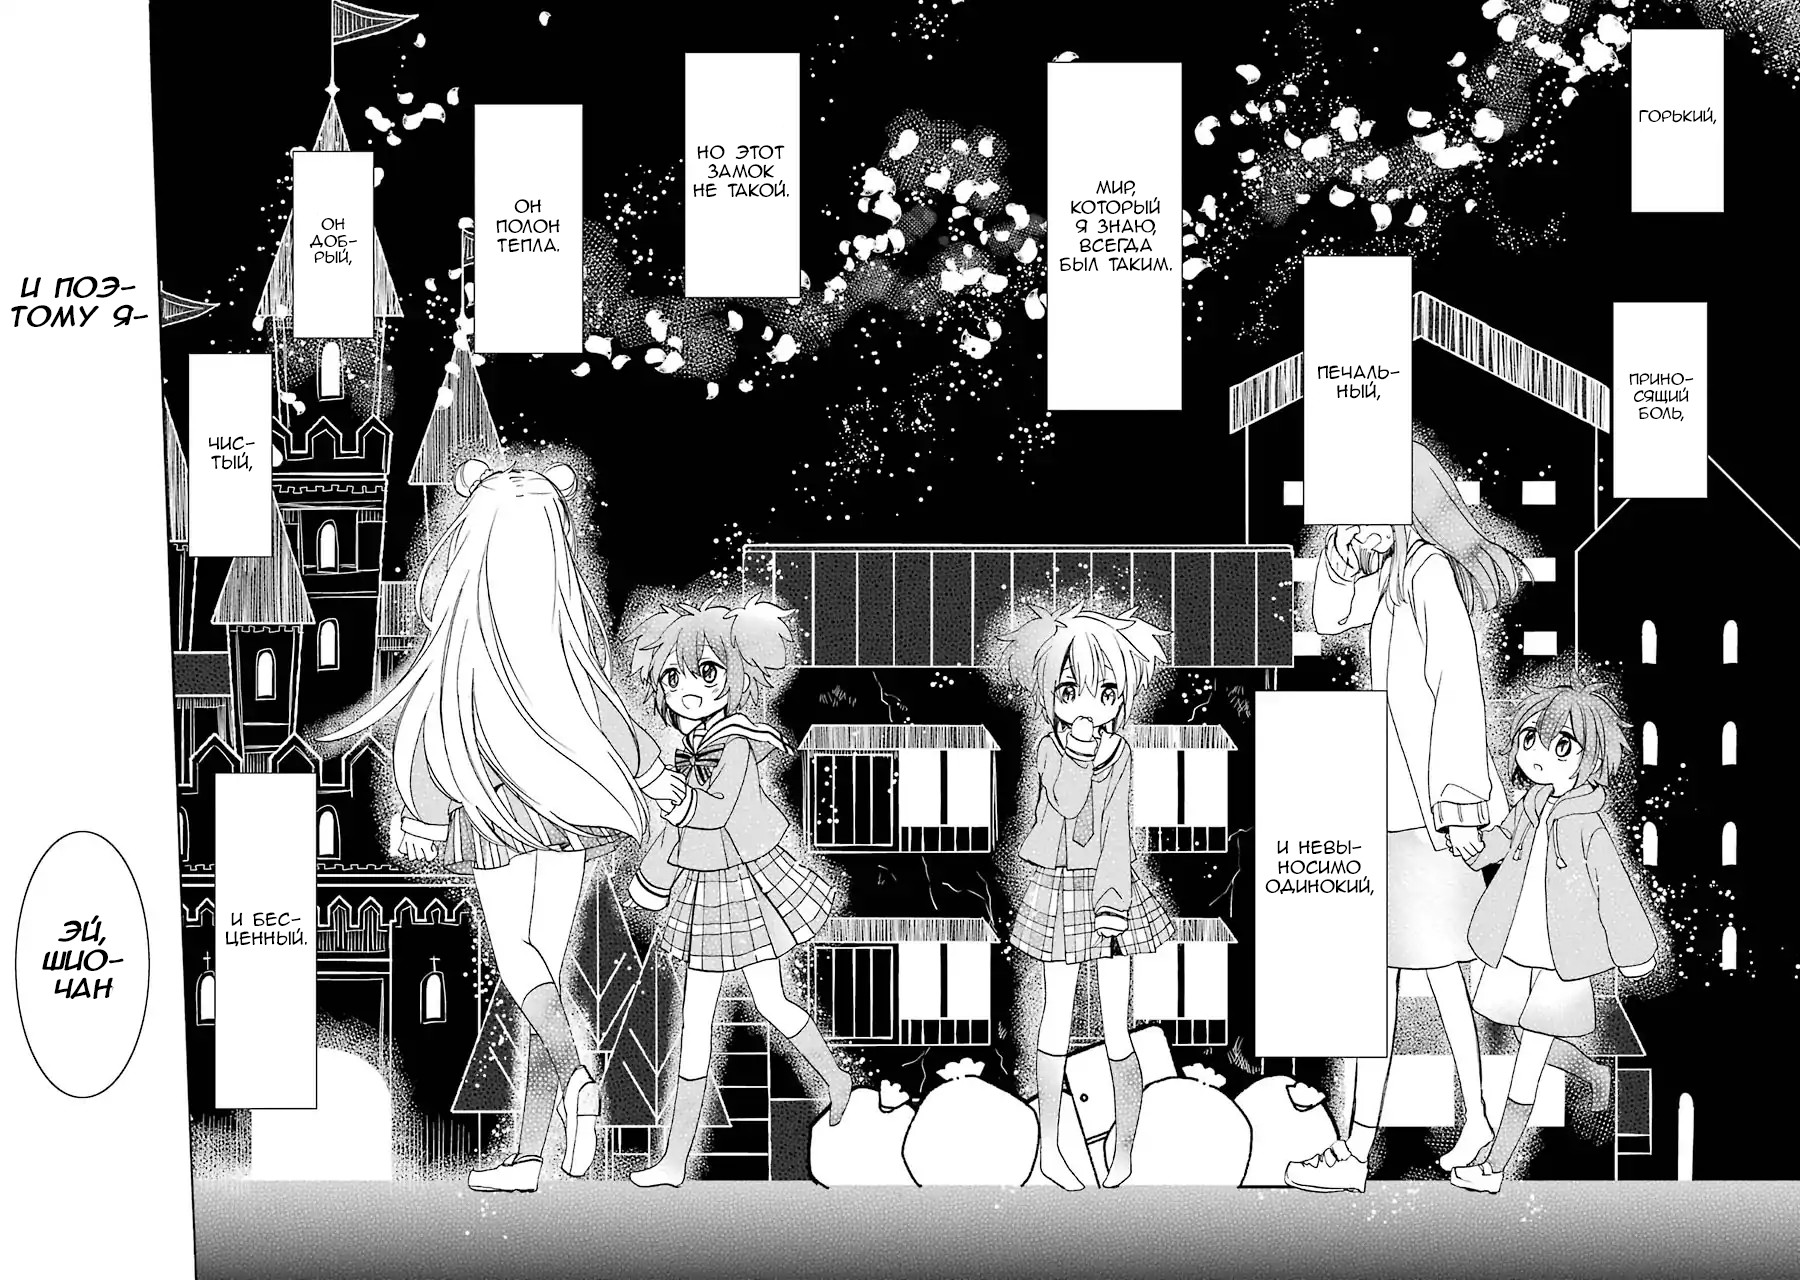 In the castle манга. Happy Sugar Life Шио. Happy Sugar Life Manga. Томы манги в ряд. Картинки из манги сладкая жизнь распечатать.